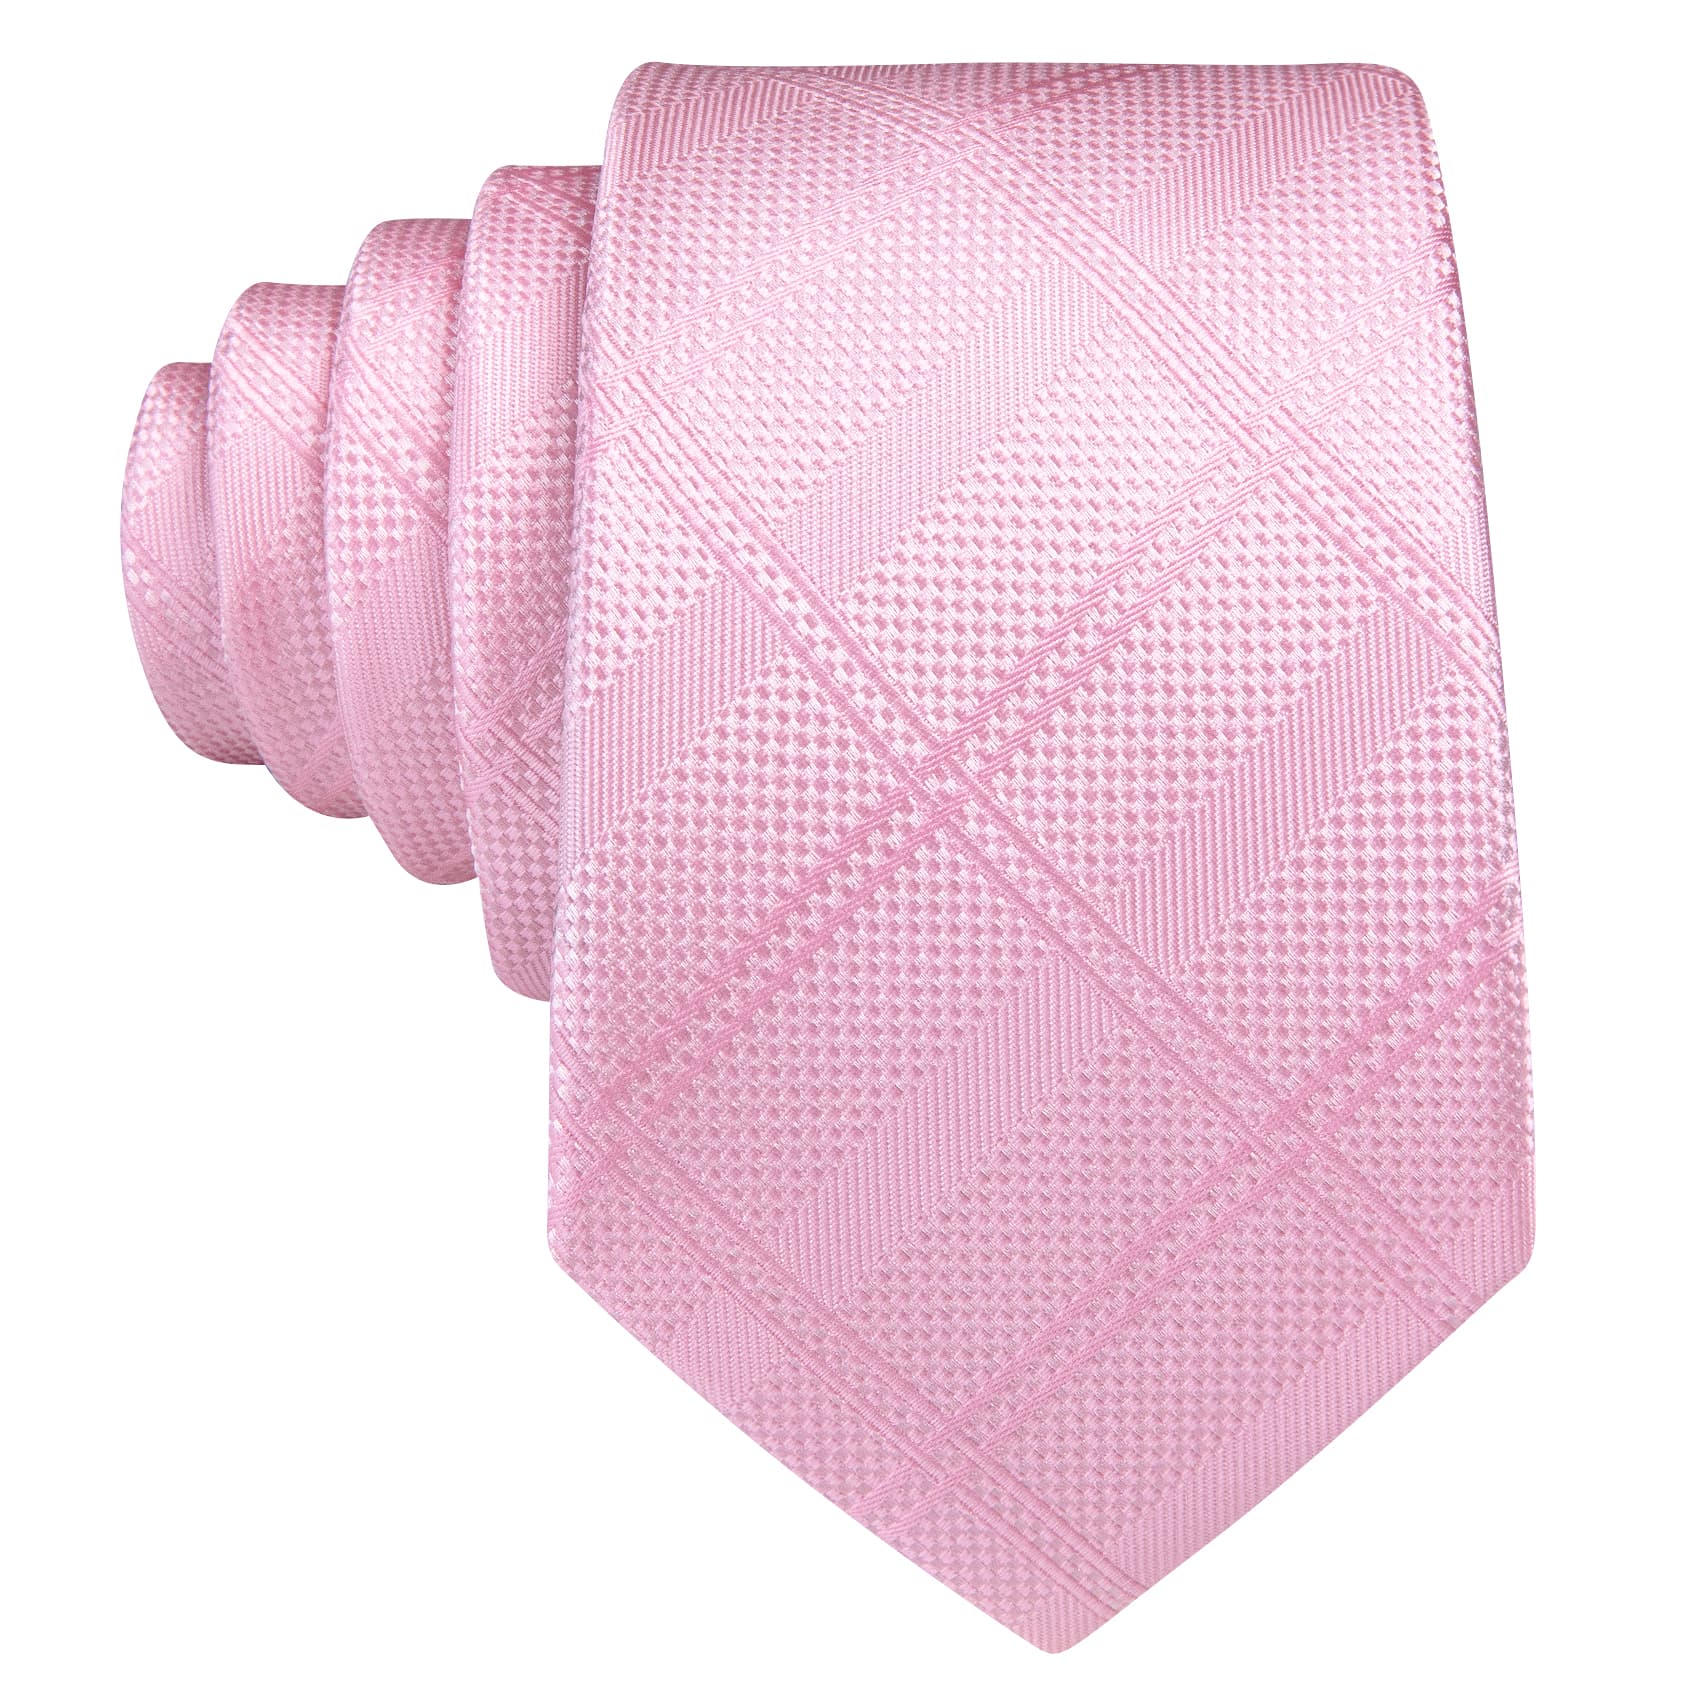  Pink Tie Mens Solid Checkered Necktie Set